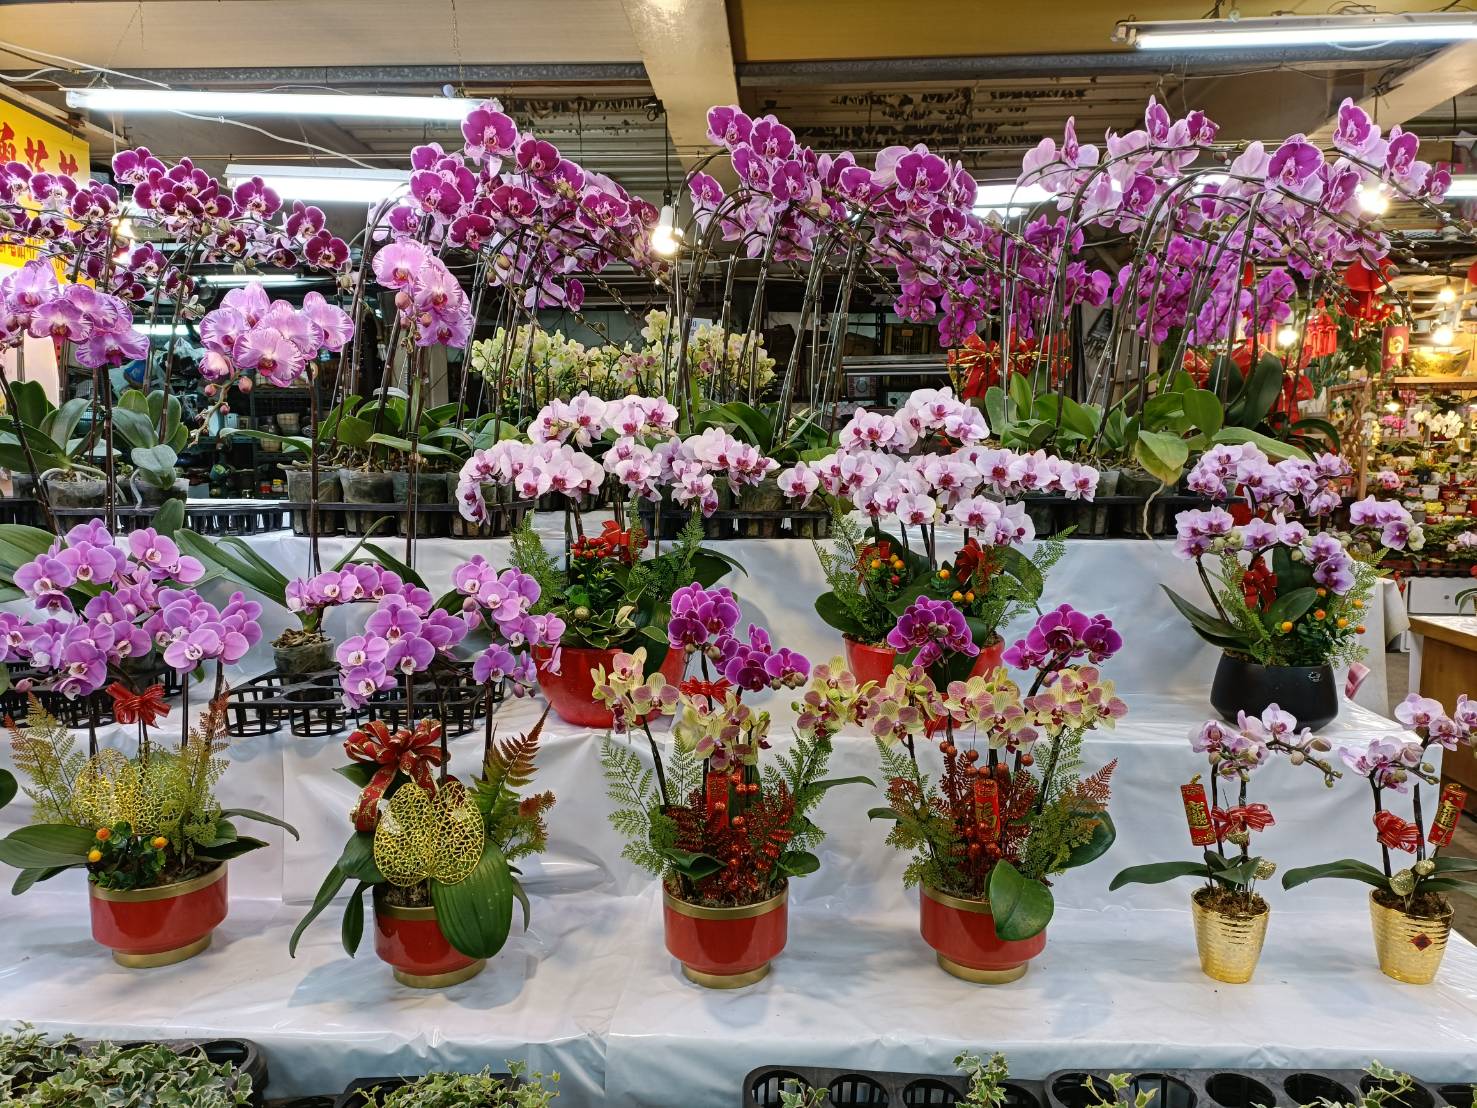 板橋花市提供種類豐富的應景花卉  讓民眾妝點新春迎接虎年好虎(福)氣